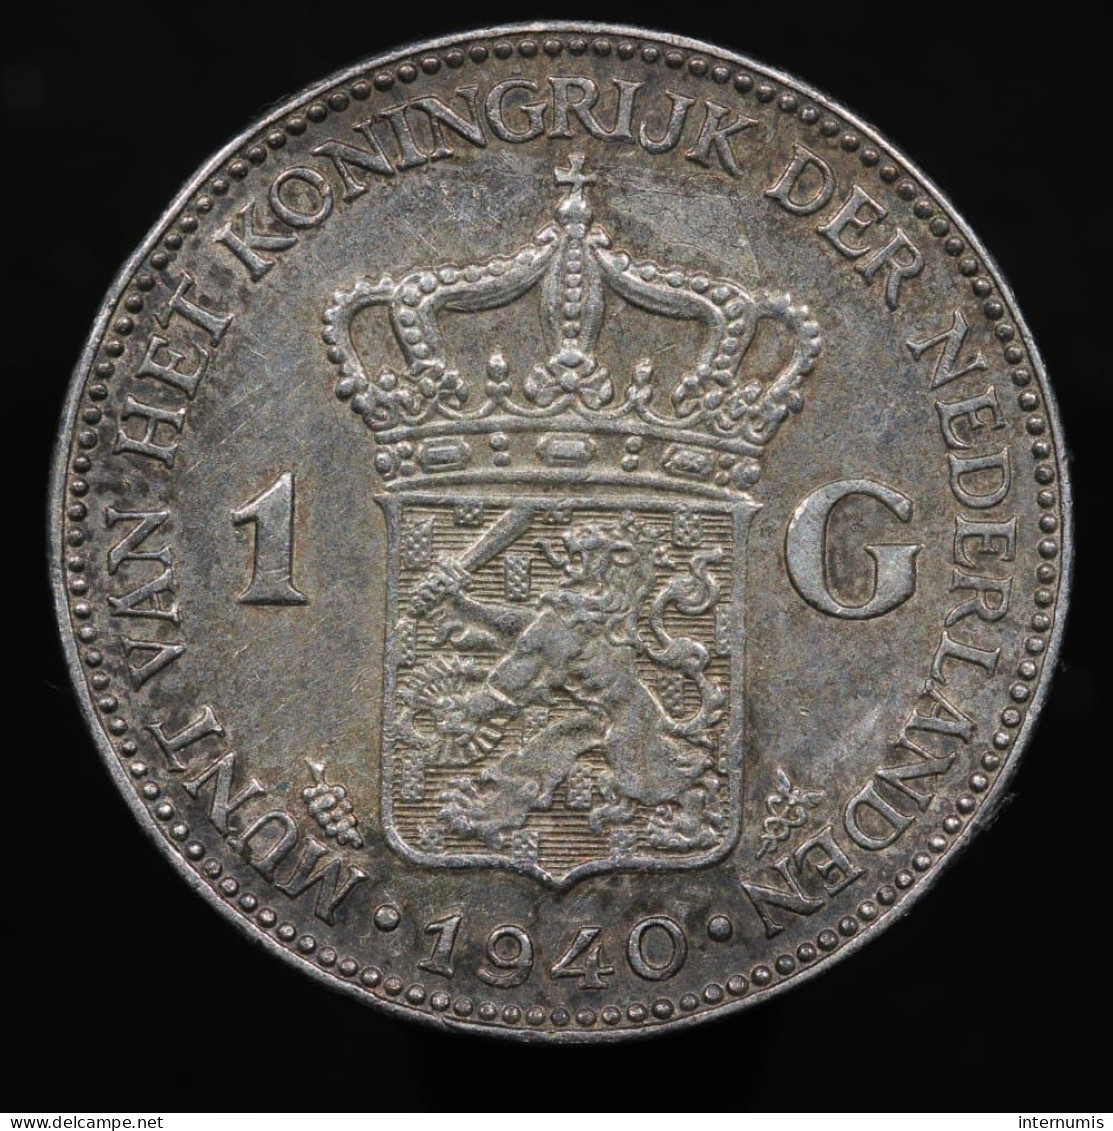 Pays Bas / Netherlands, Wilhelmina, 1 Gulden, 1940, Argent (Silver), SUP (AU), KM#161.1 - 1 Gulden